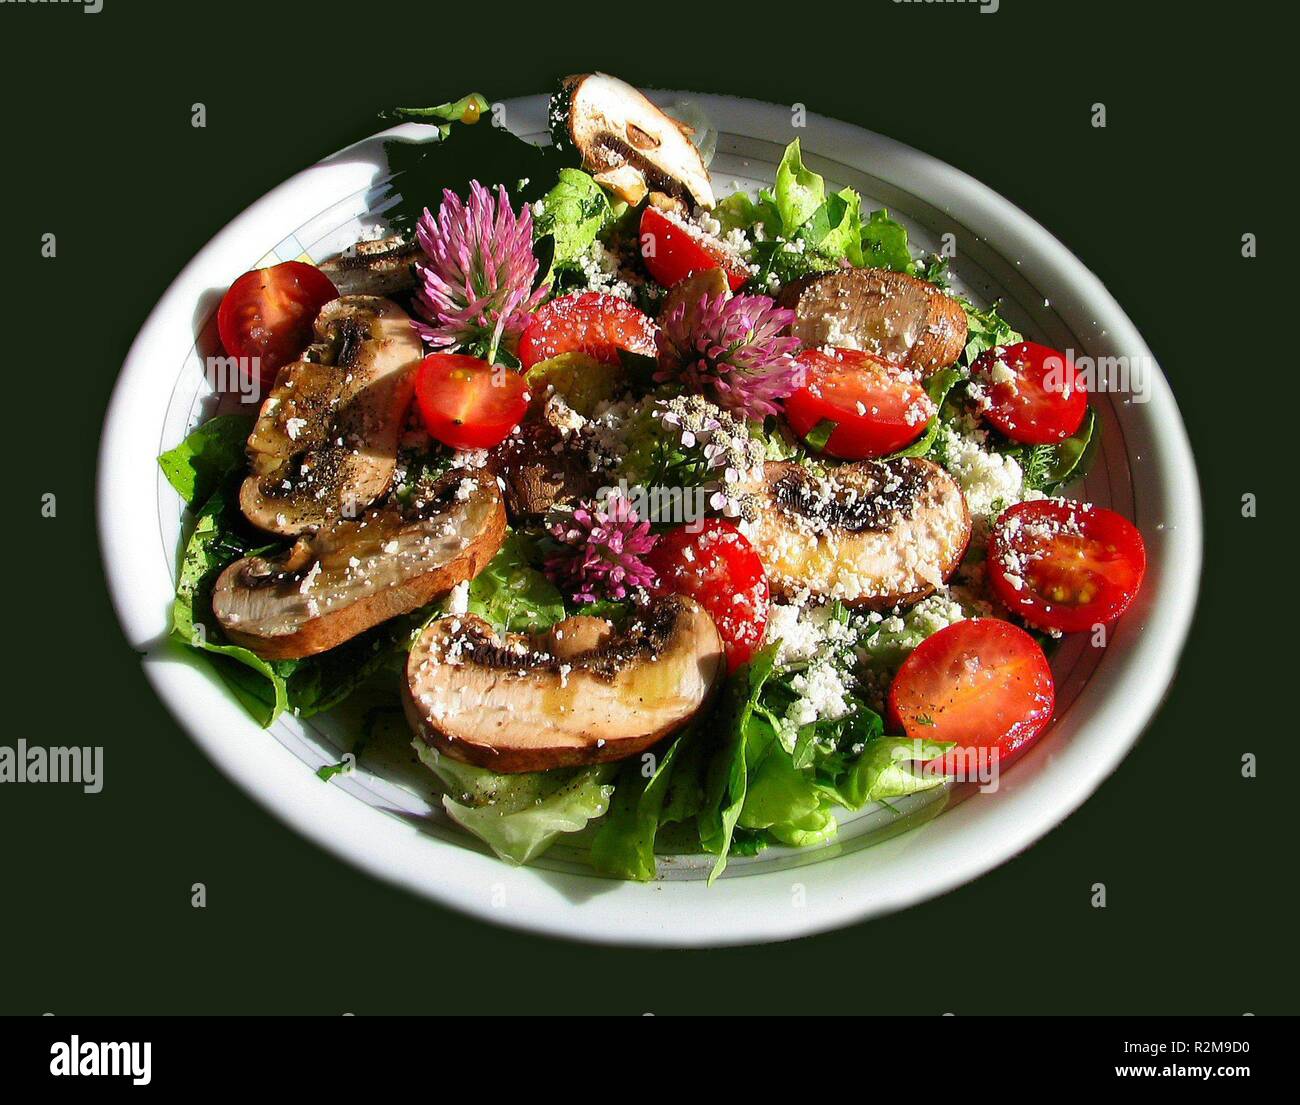 wild herbs salad Stock Photo